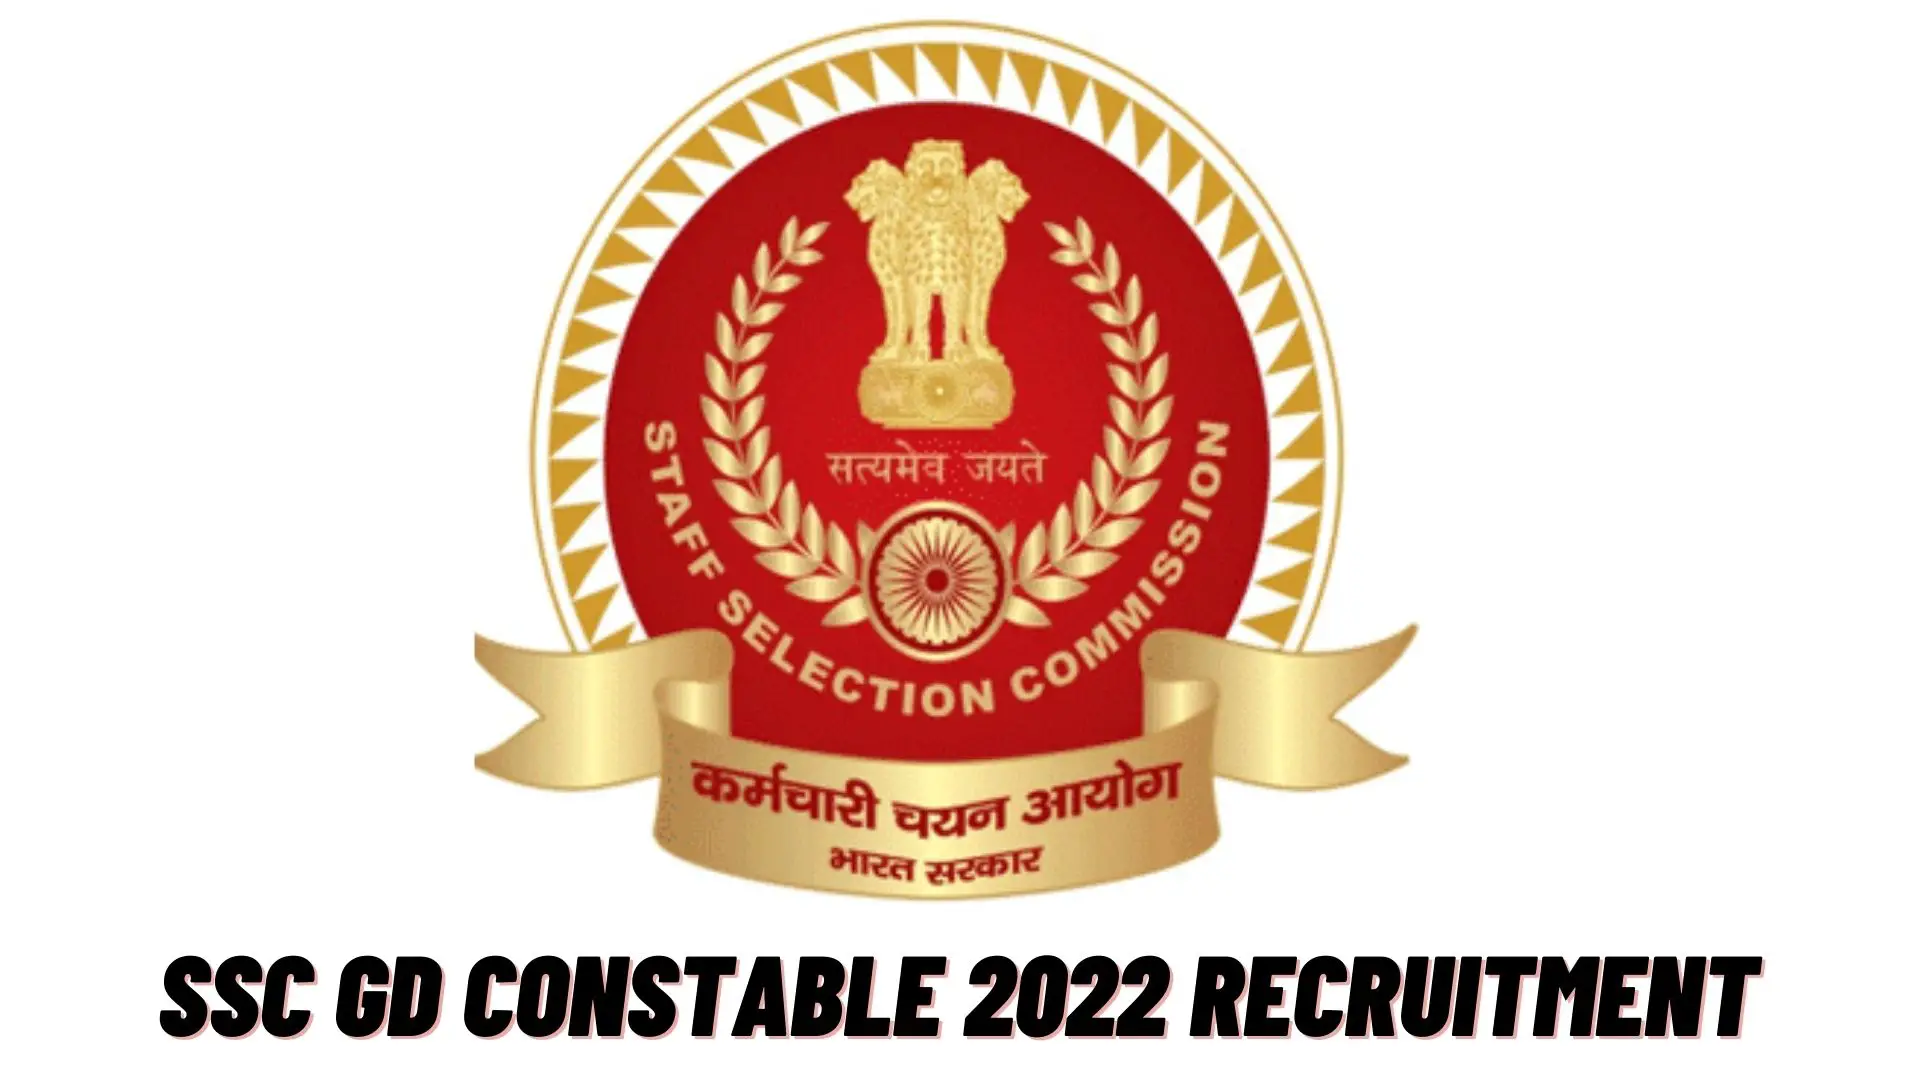 SSC GD Constable 2022 Recruitment